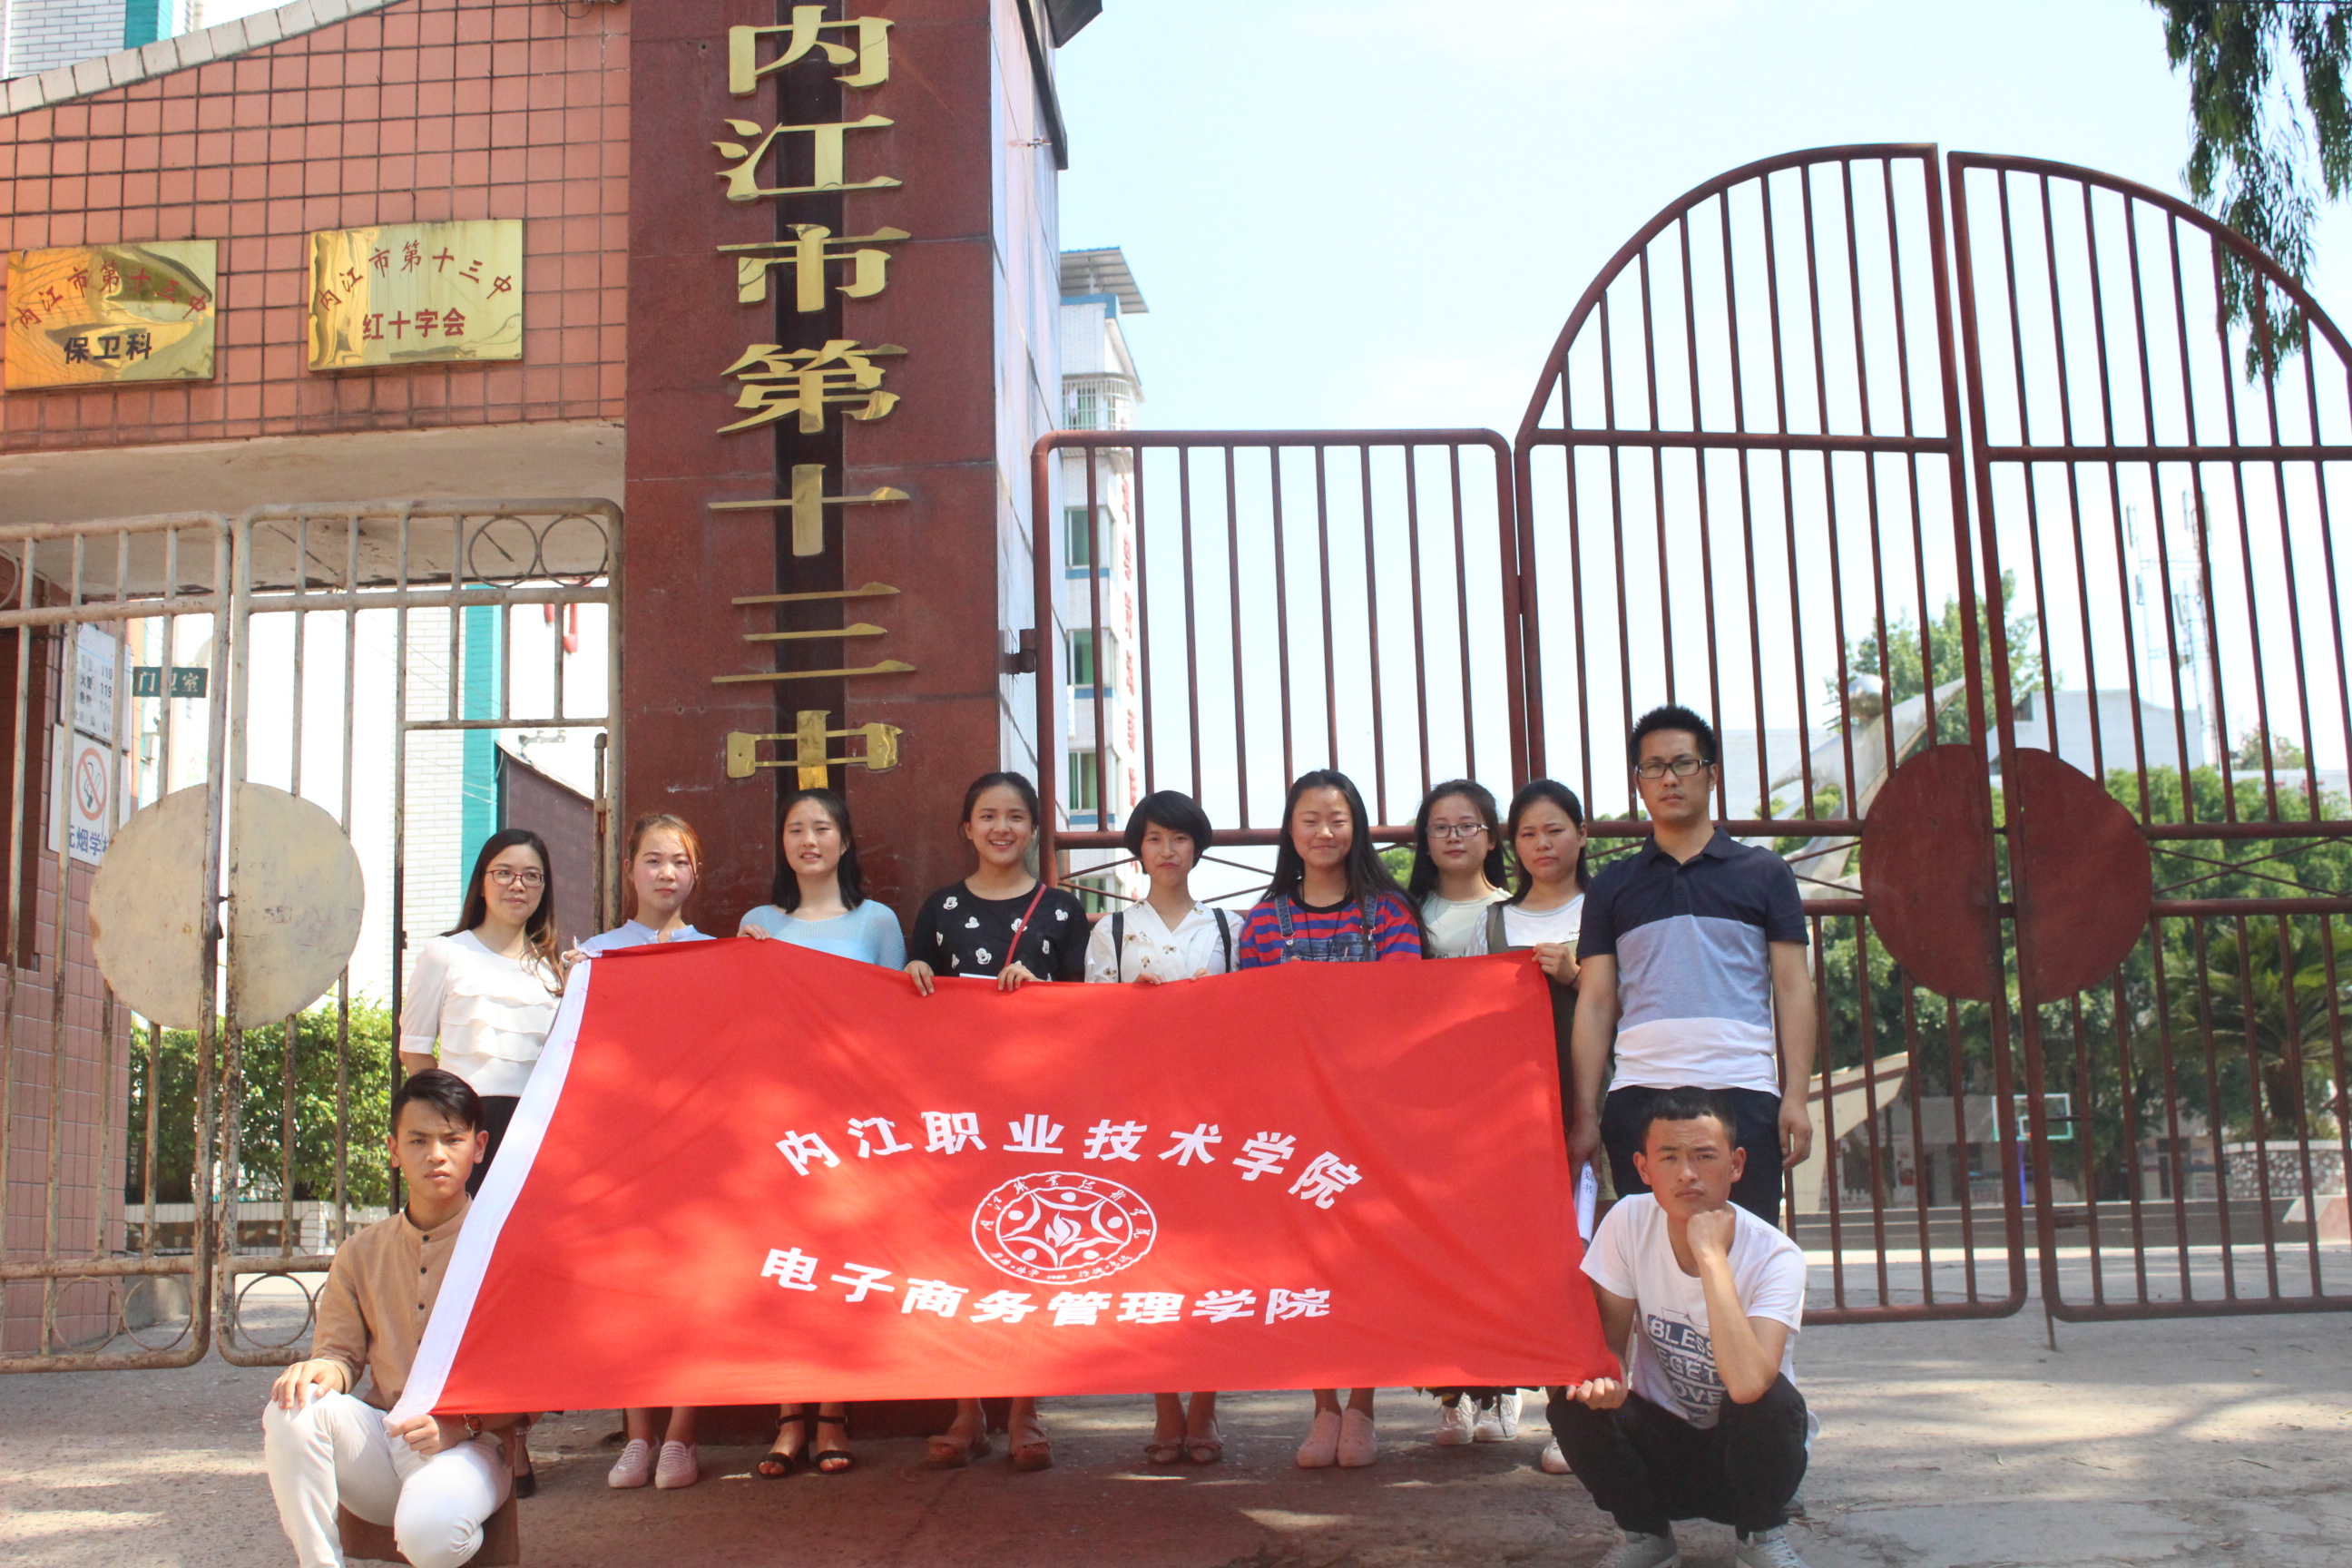 此次活动得到了内江第十三中学领导的大力支持,同时也对我院学生实践